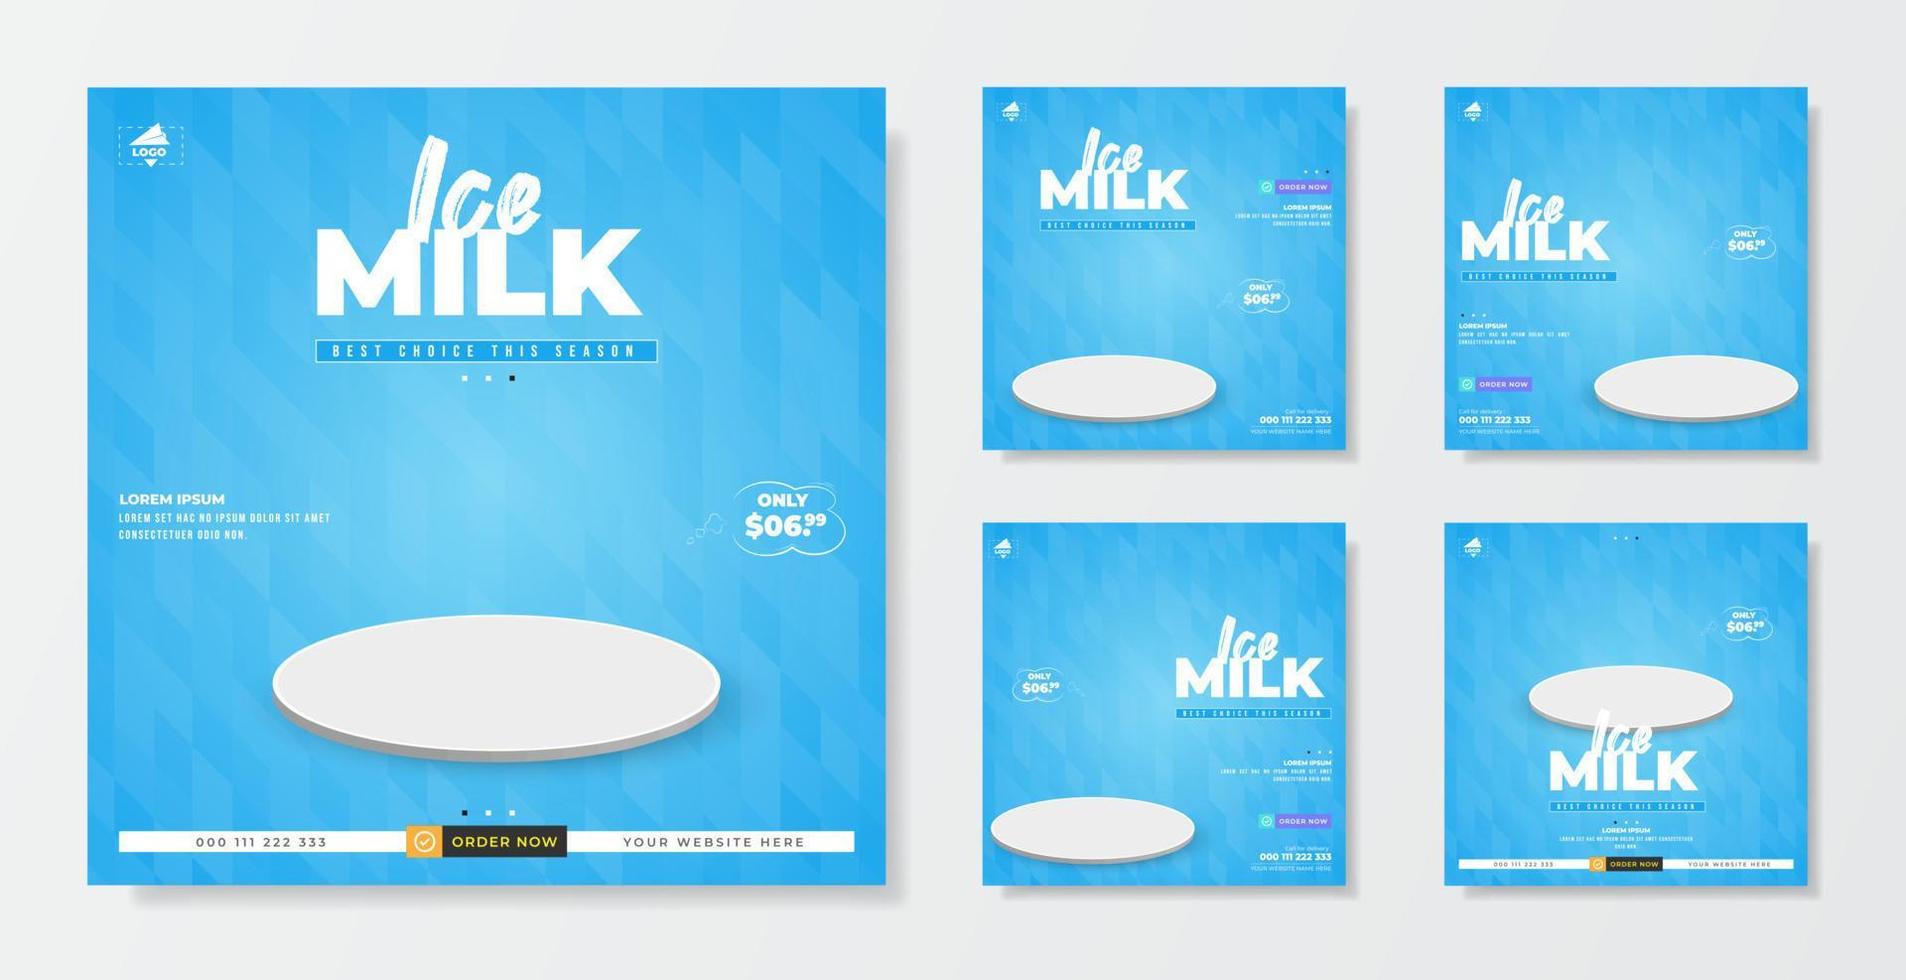 ice milk promotion försäljningsmall för inlägg på sociala medier vektor